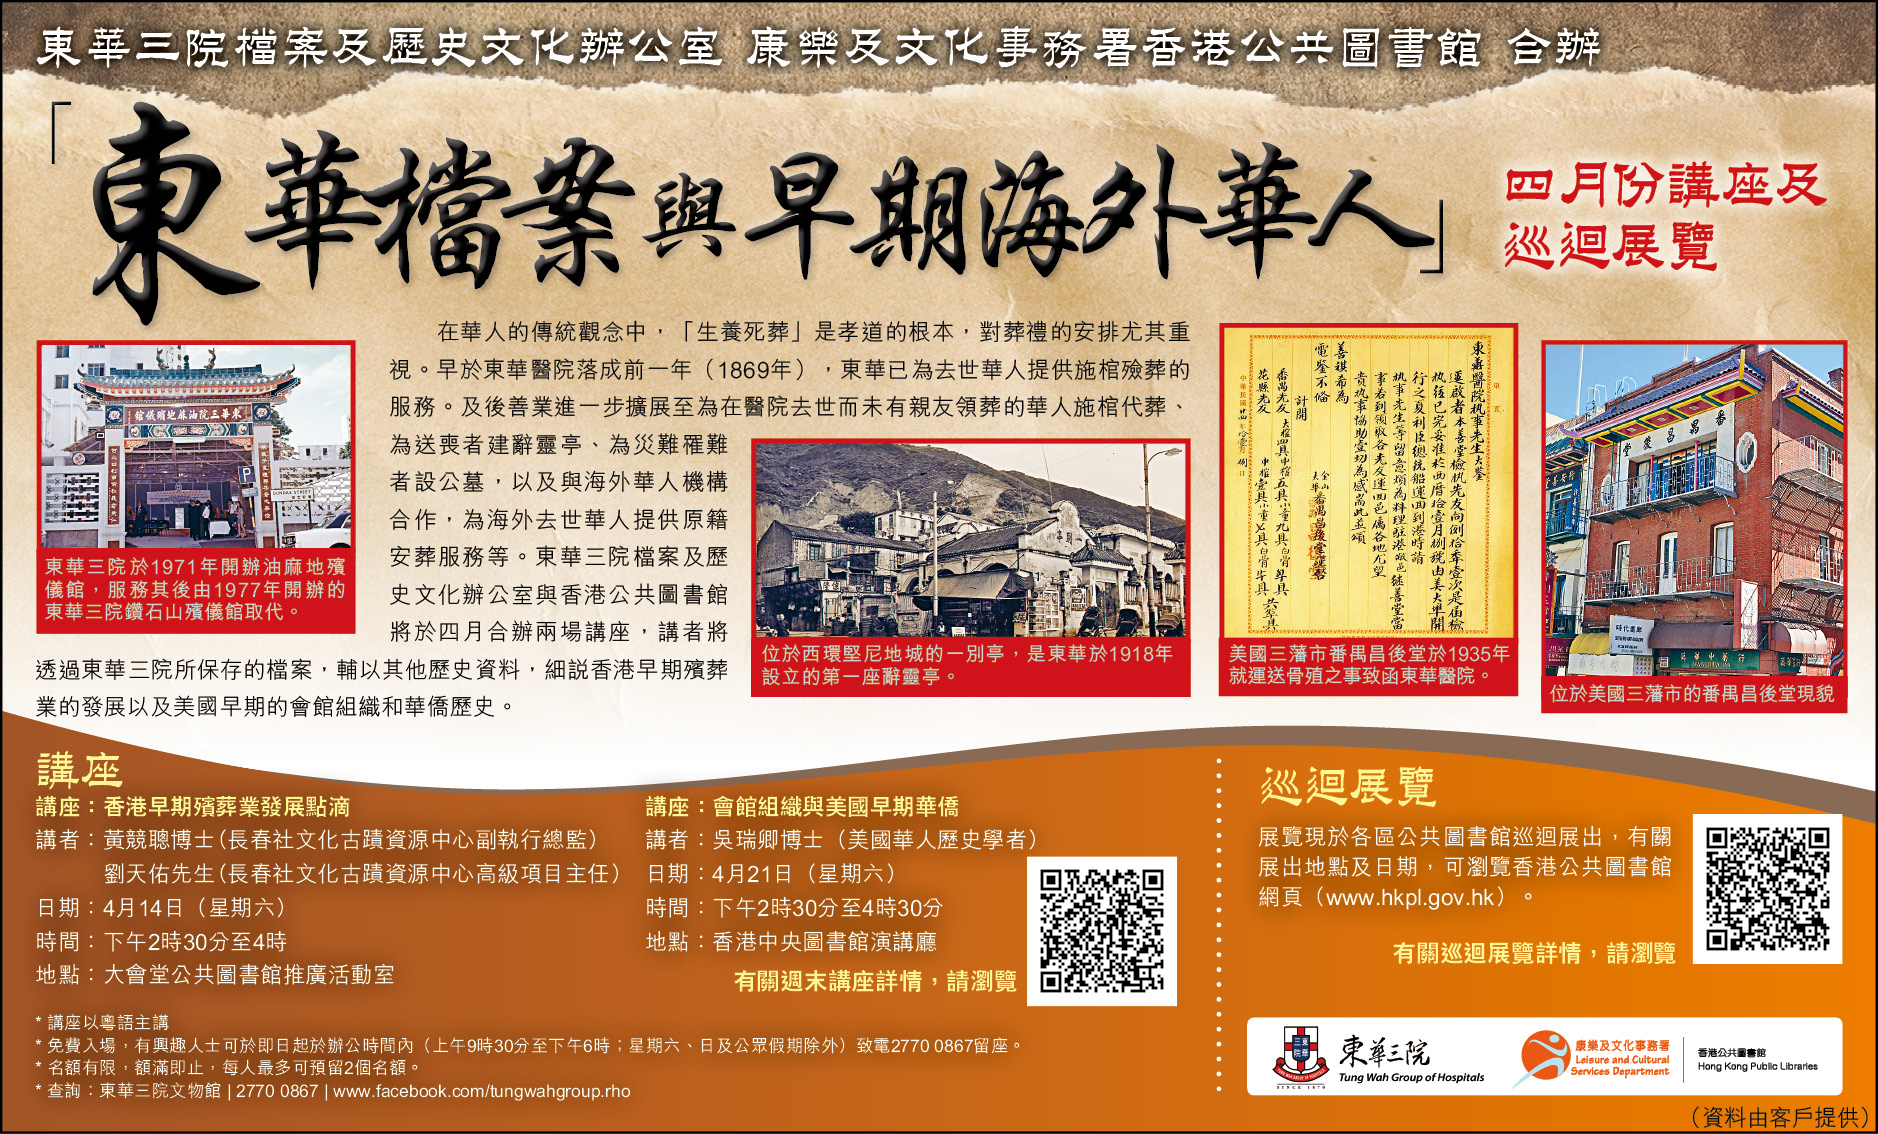 「東華檔案與早期海外華人」講座及巡迴展覽 - 頭條日報廣告稿 (2018.3.27)